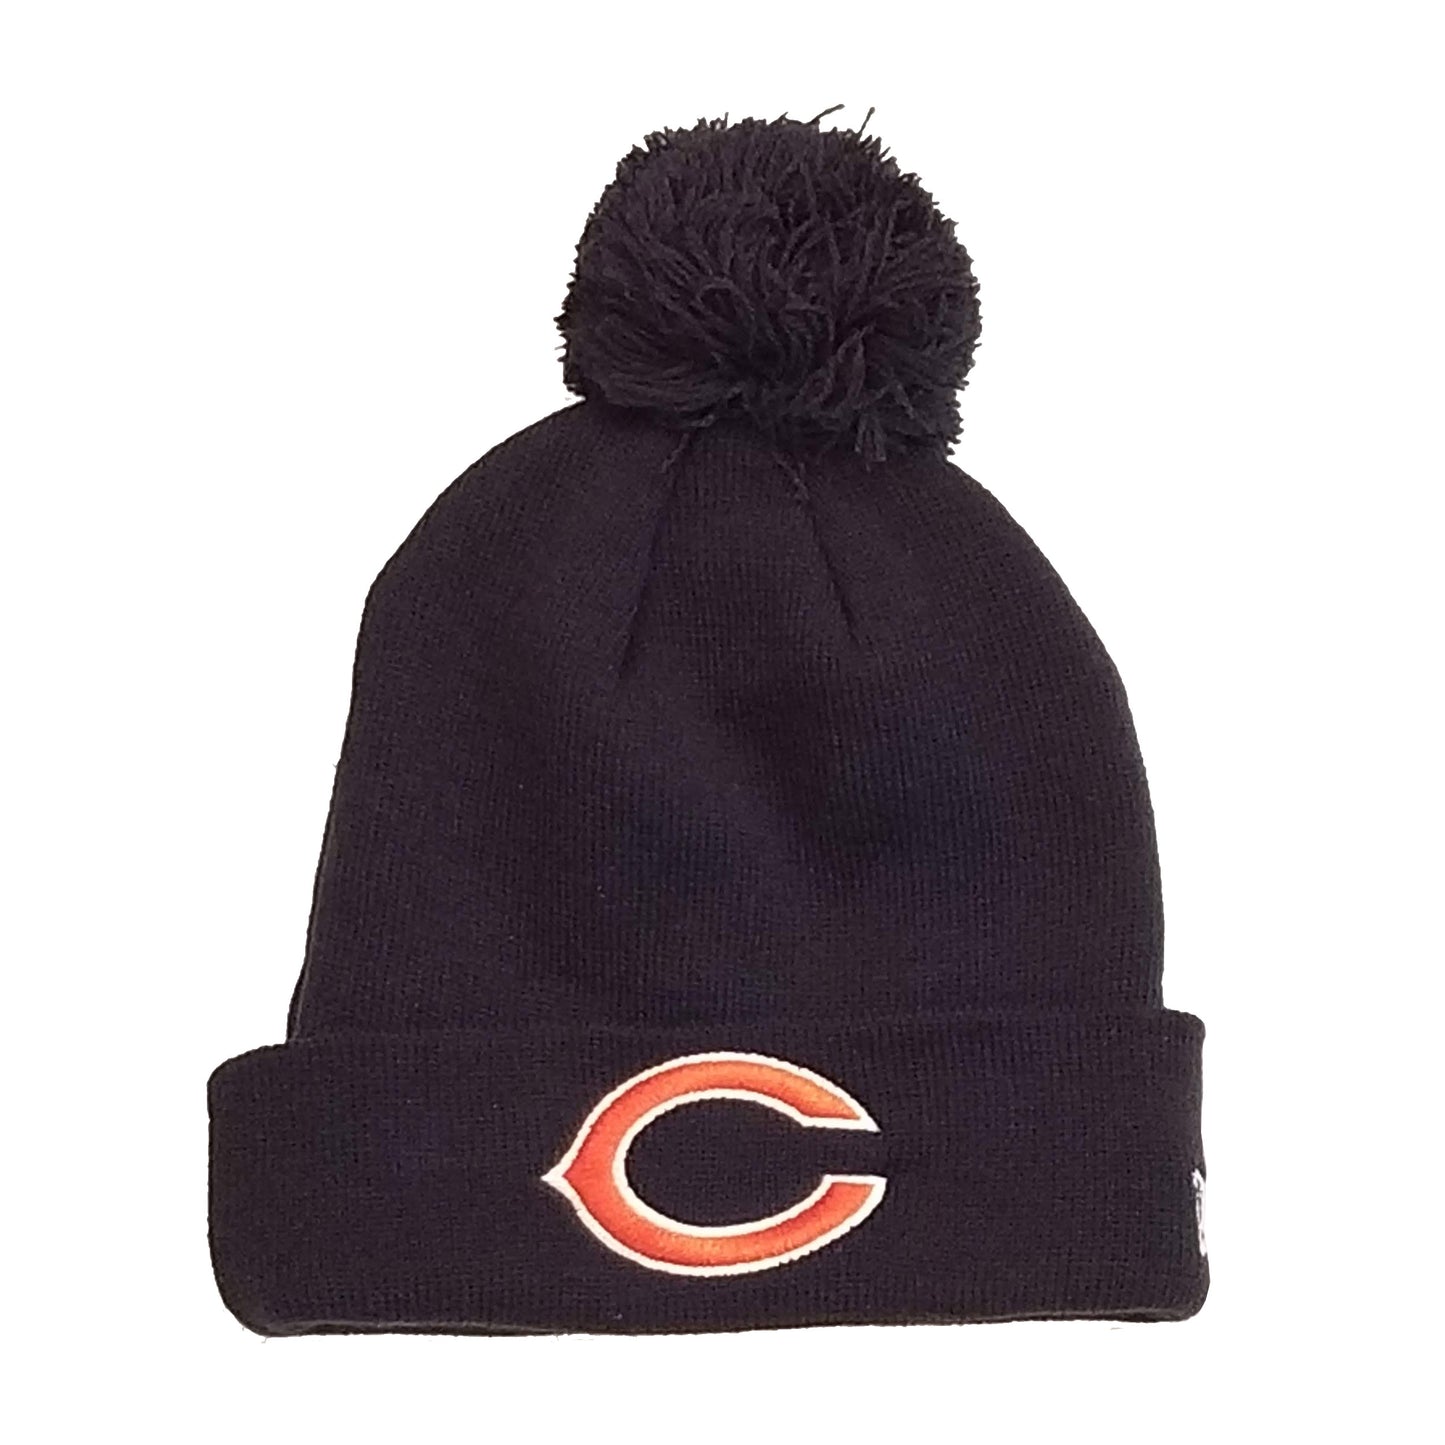 Chicago Bears Navy "C" Pom Knit Hat